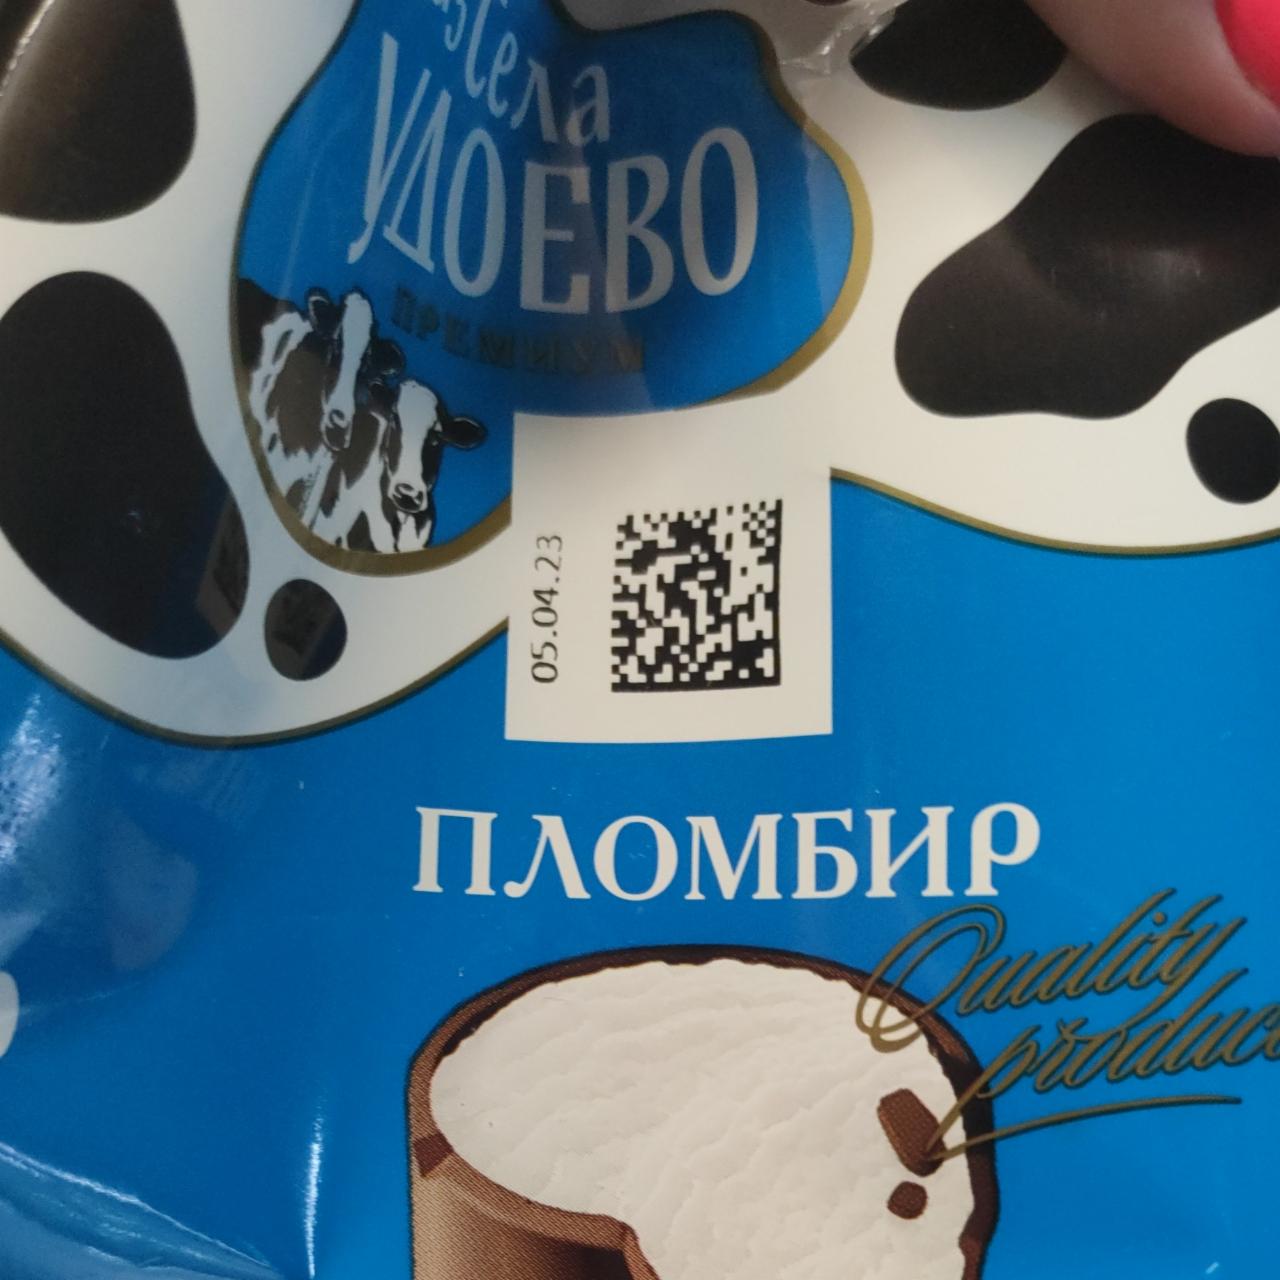 Фото - мороженое пломбир с ароматом ванили во взбитой сливочной шоколадной глазури Из села Удоево